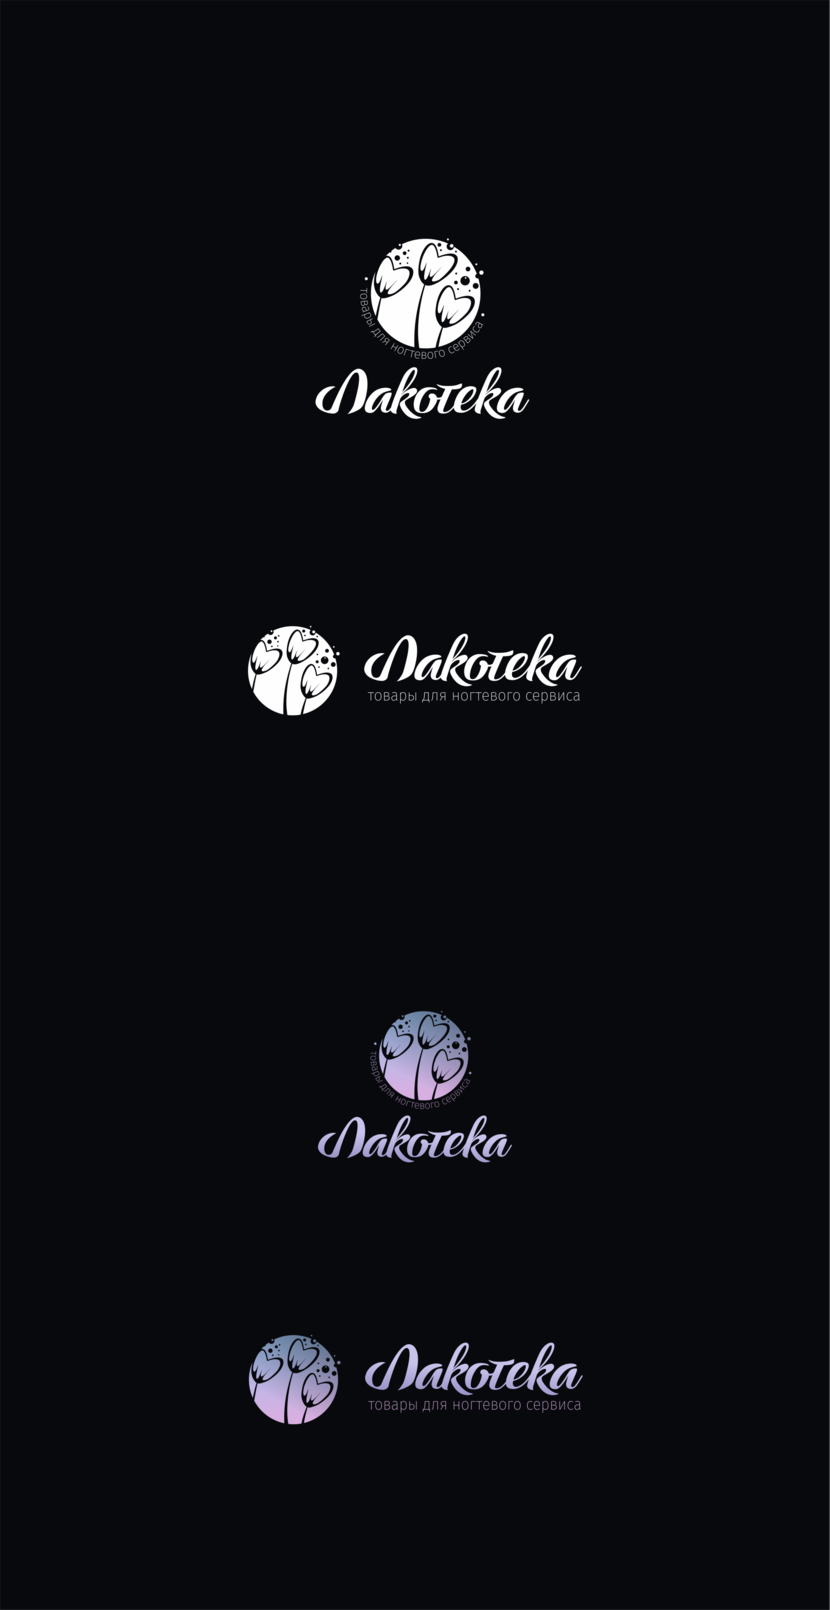 Логотип для сети магазинов ЛАКОТЕКА - товары для маникюра, педикюра и ногтевого сервиса.  -  автор Katrin Mirnaya